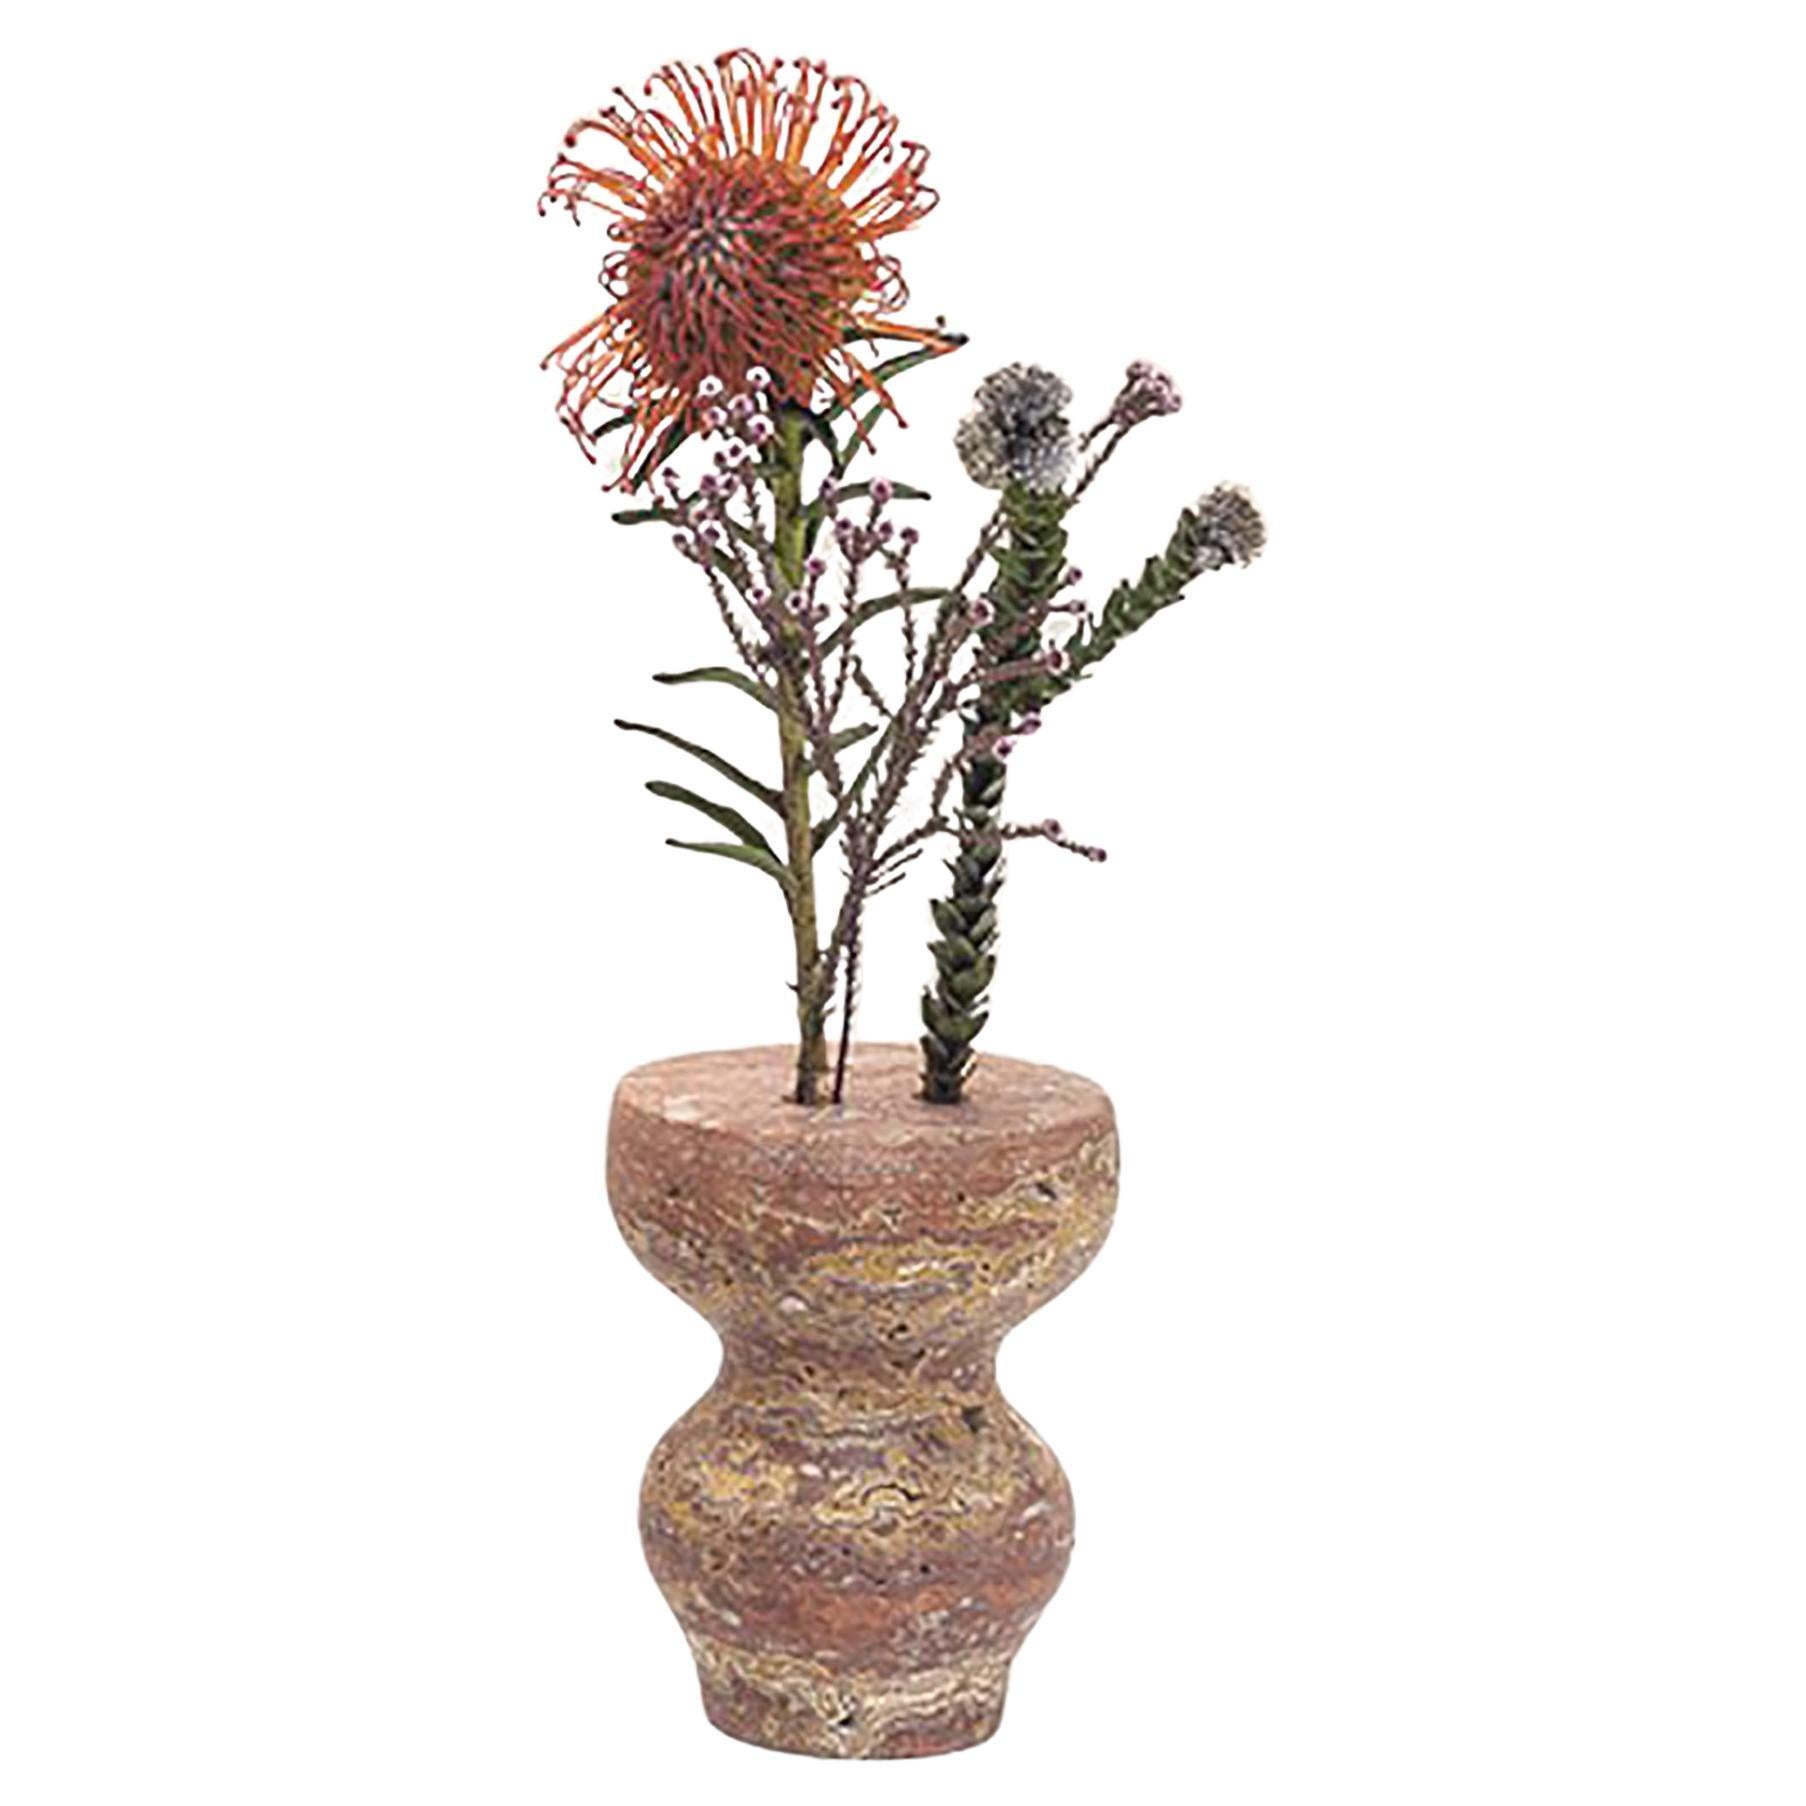 21st Century by Feix & Merlin "DORCHESTER SUPER MICRO" Marble Vase for Ikebana